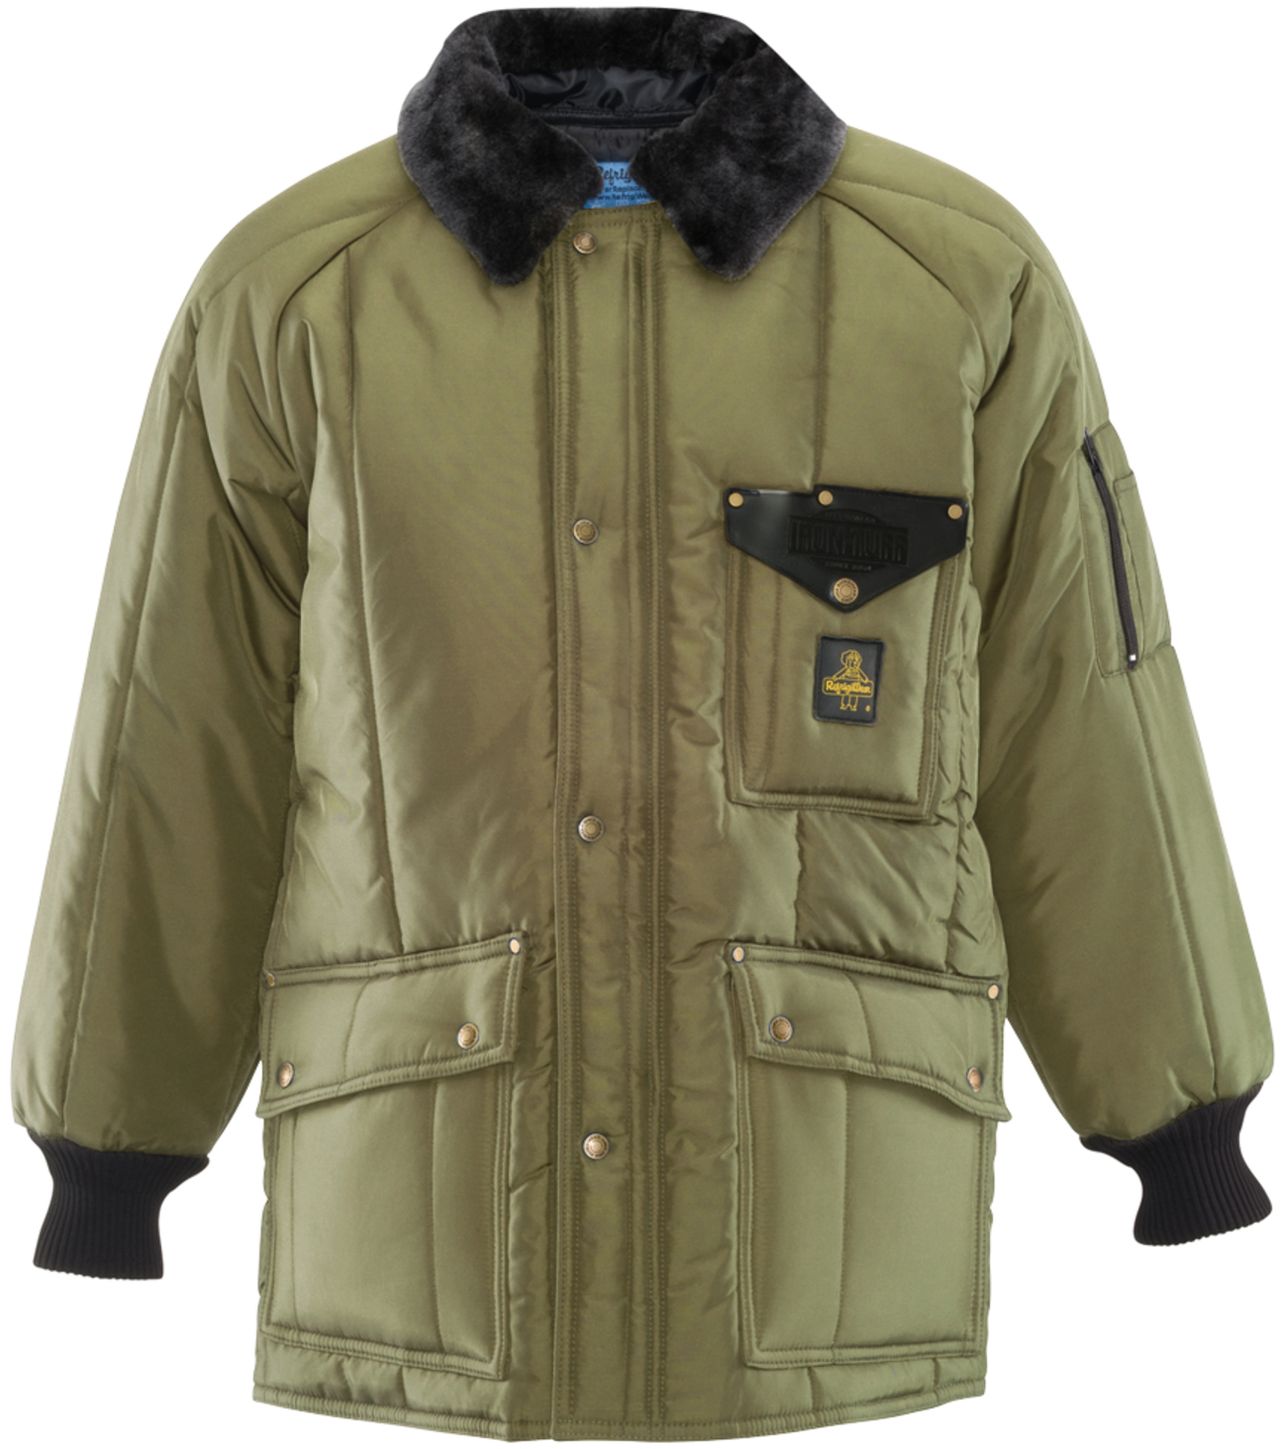 RefrigiWear 0358 Iron-Tuff Siberian Winter Work Coat — Coat Size